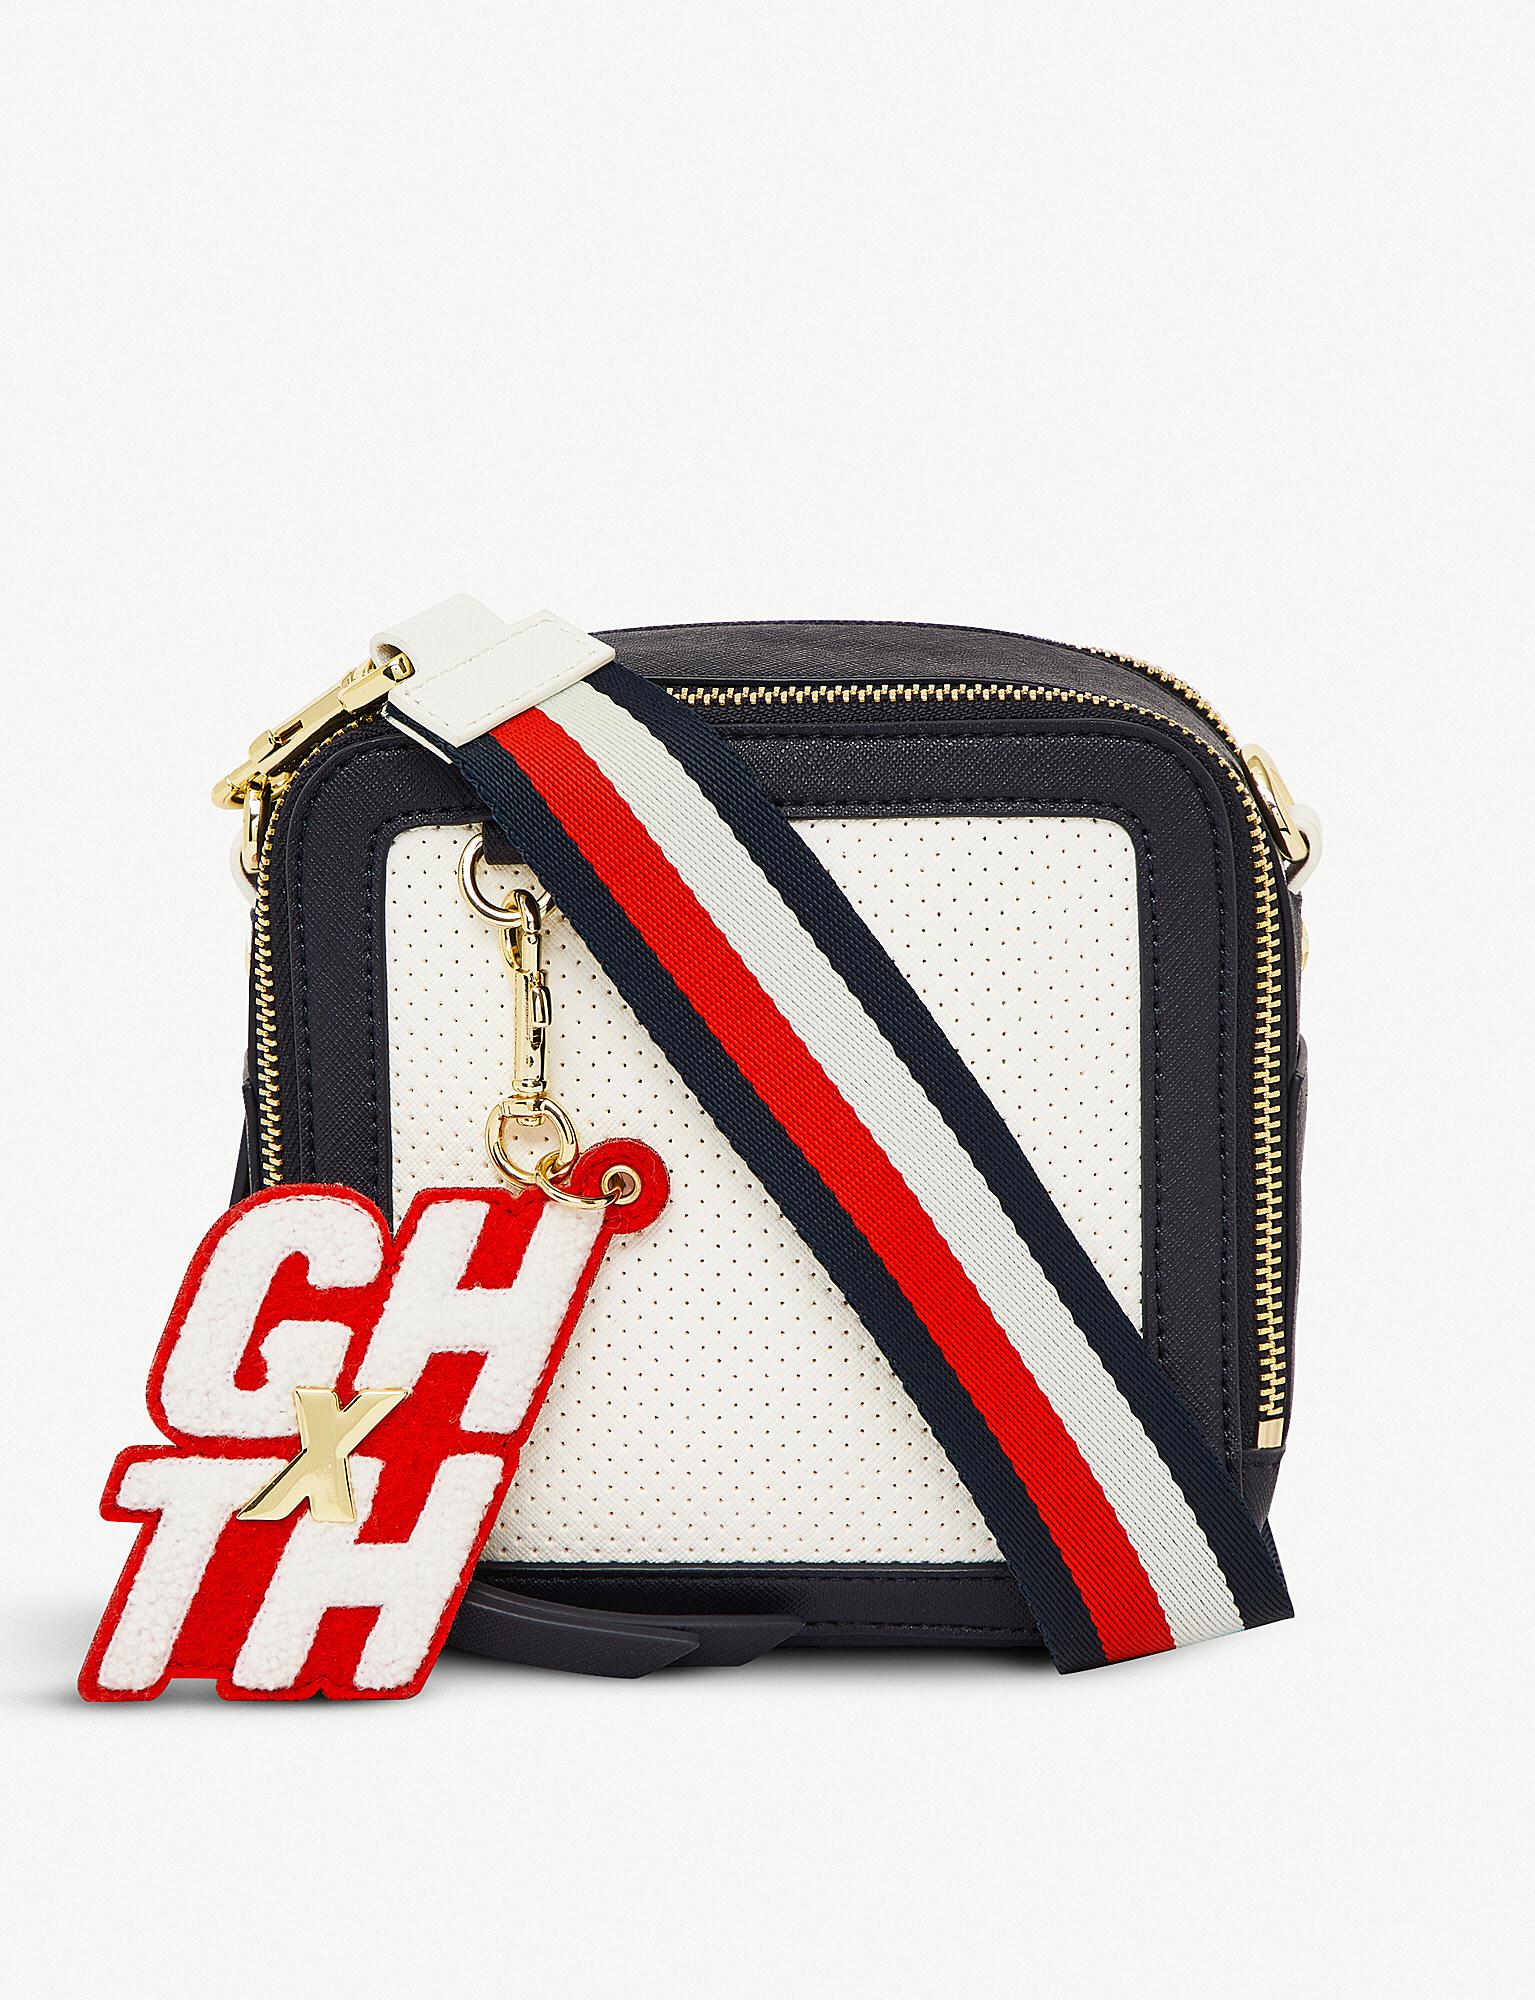 Tommy Hilfiger X Gigi Hadid Cross-body Bag | Lyst Canada